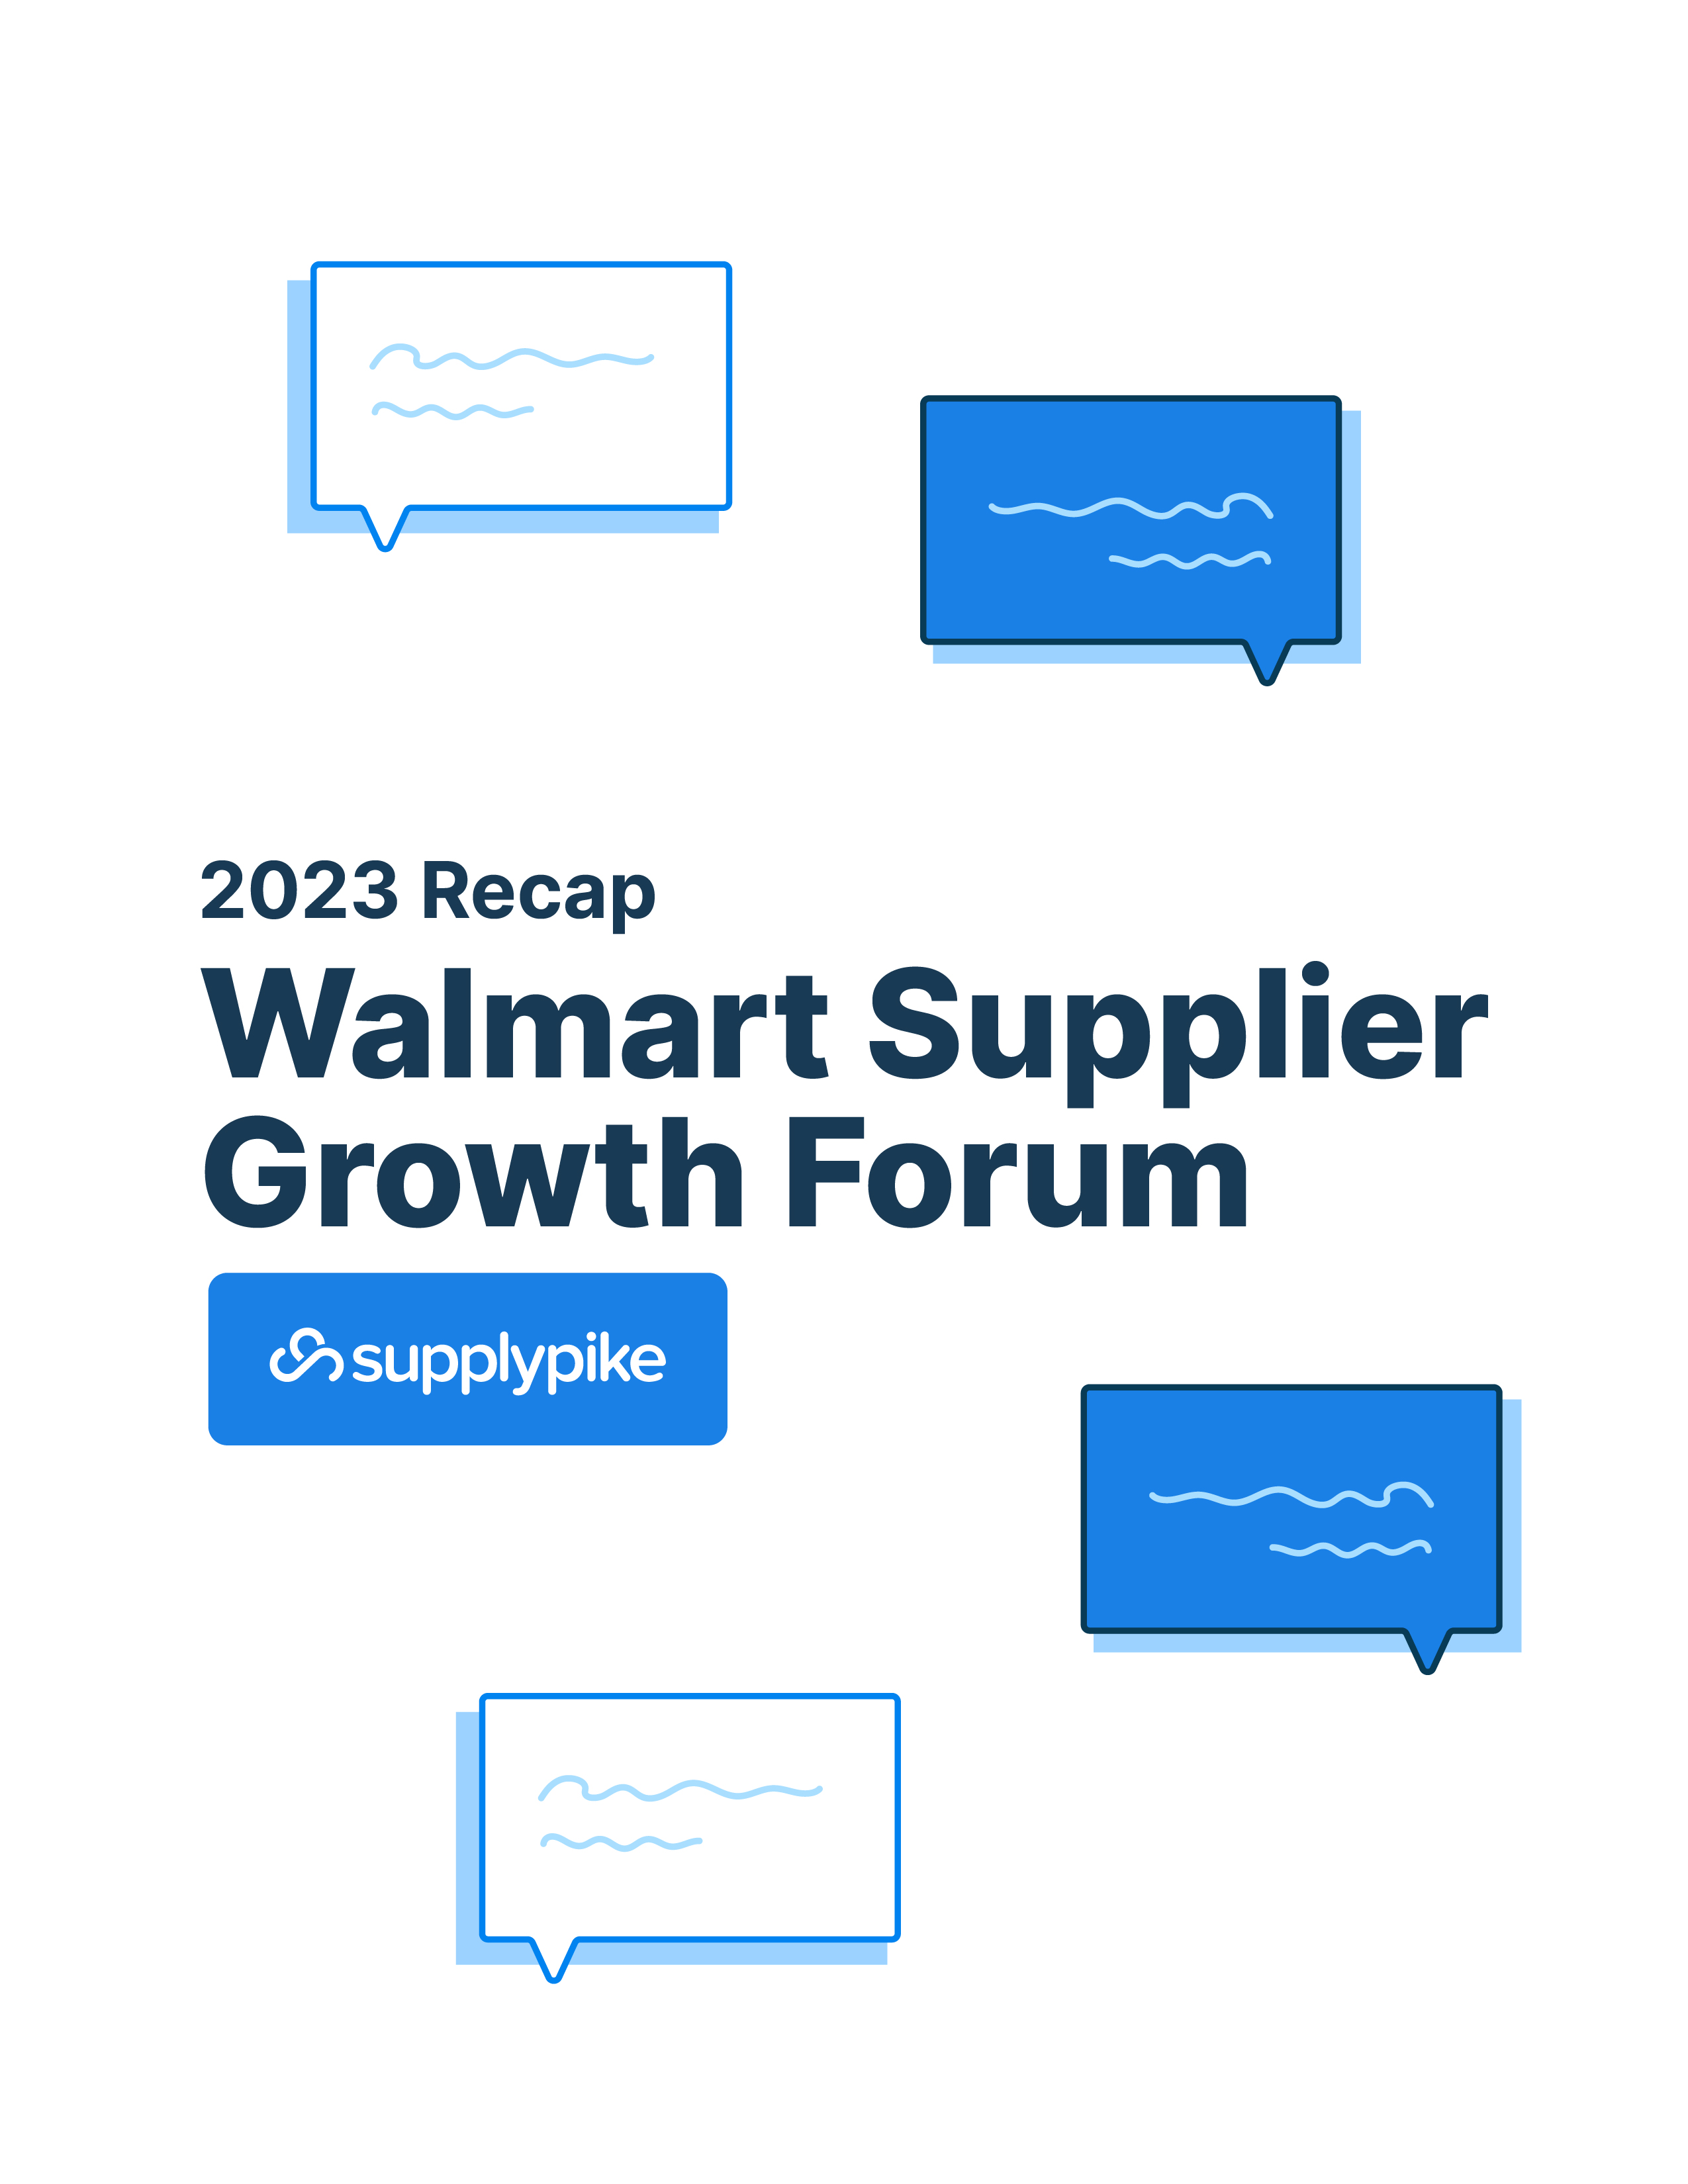 2023 Walmart Supplier Growth Forum Recap SupplierWiki